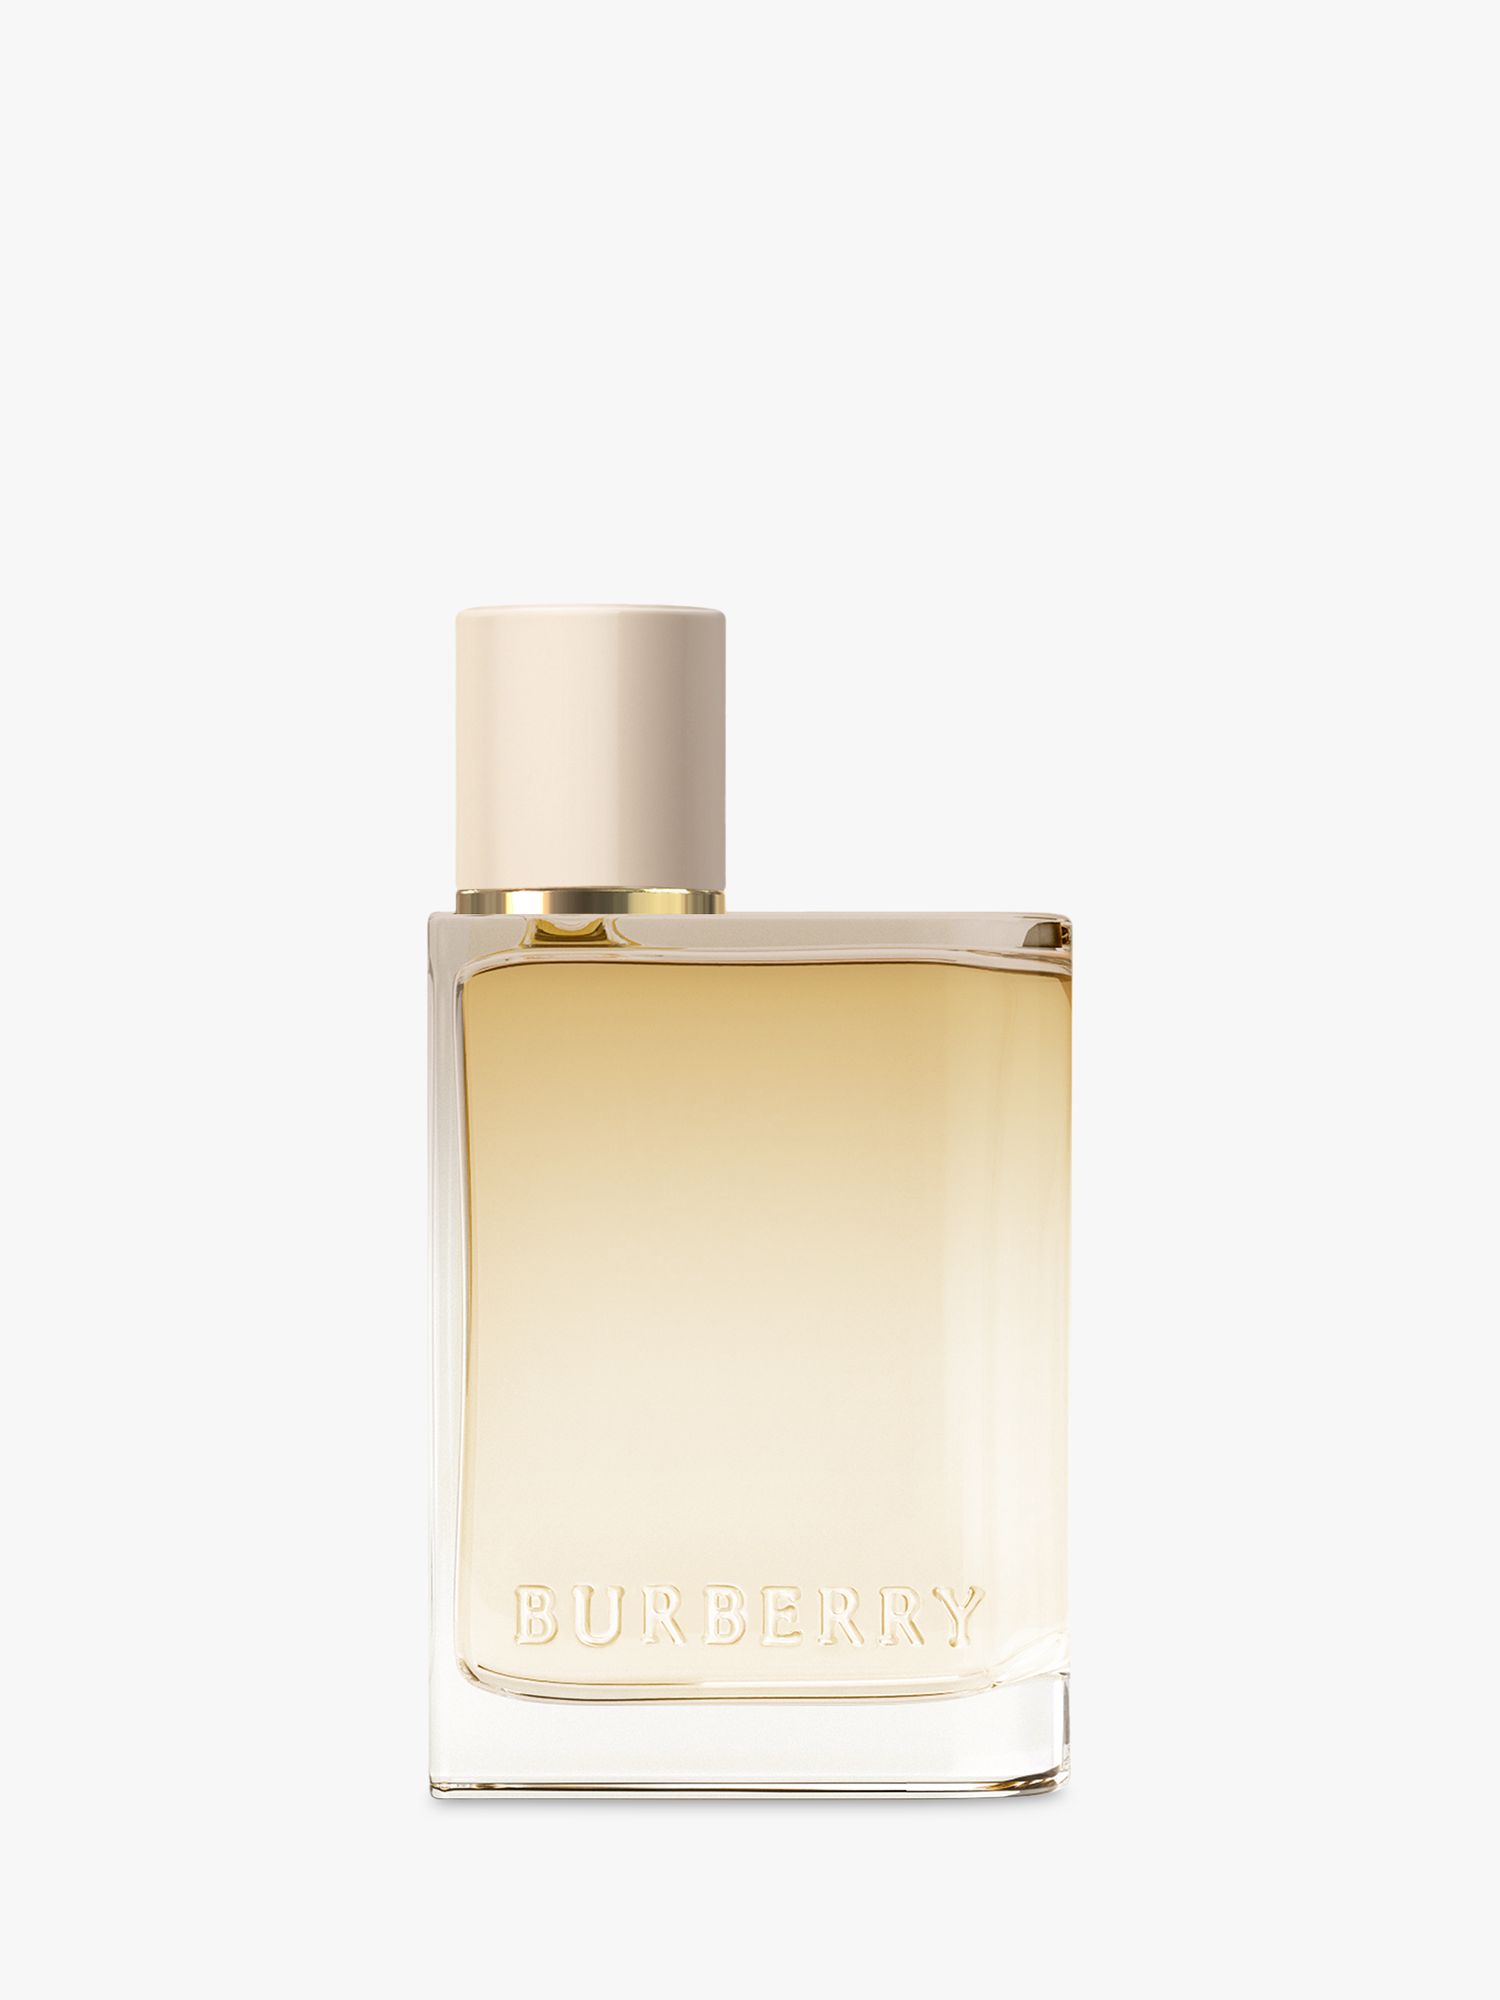 burberry her eau de parfum 30ml